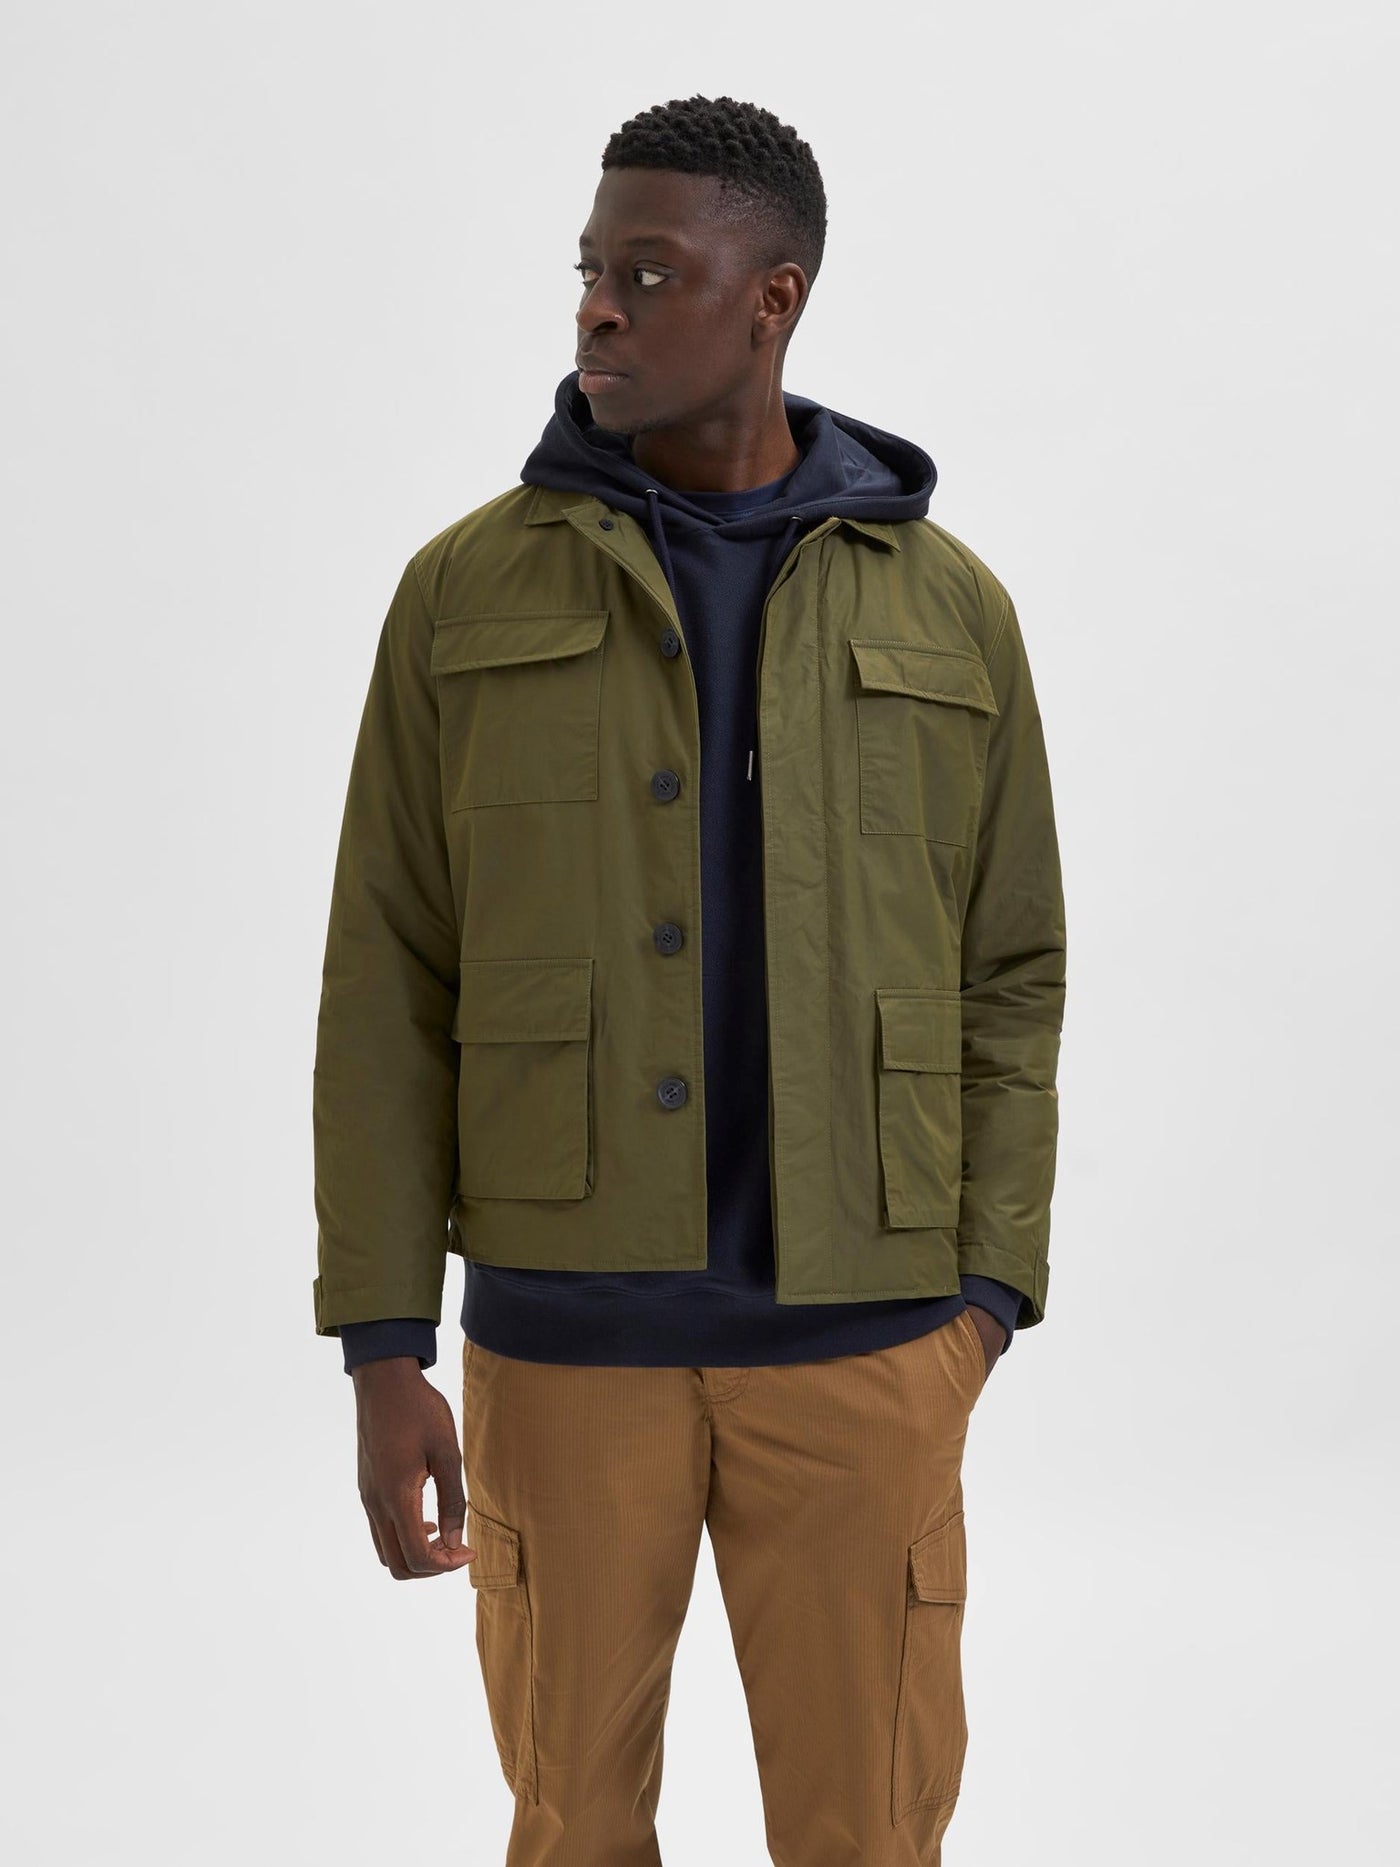 Regen Field Jacket - Winter Moss - Selected Homme